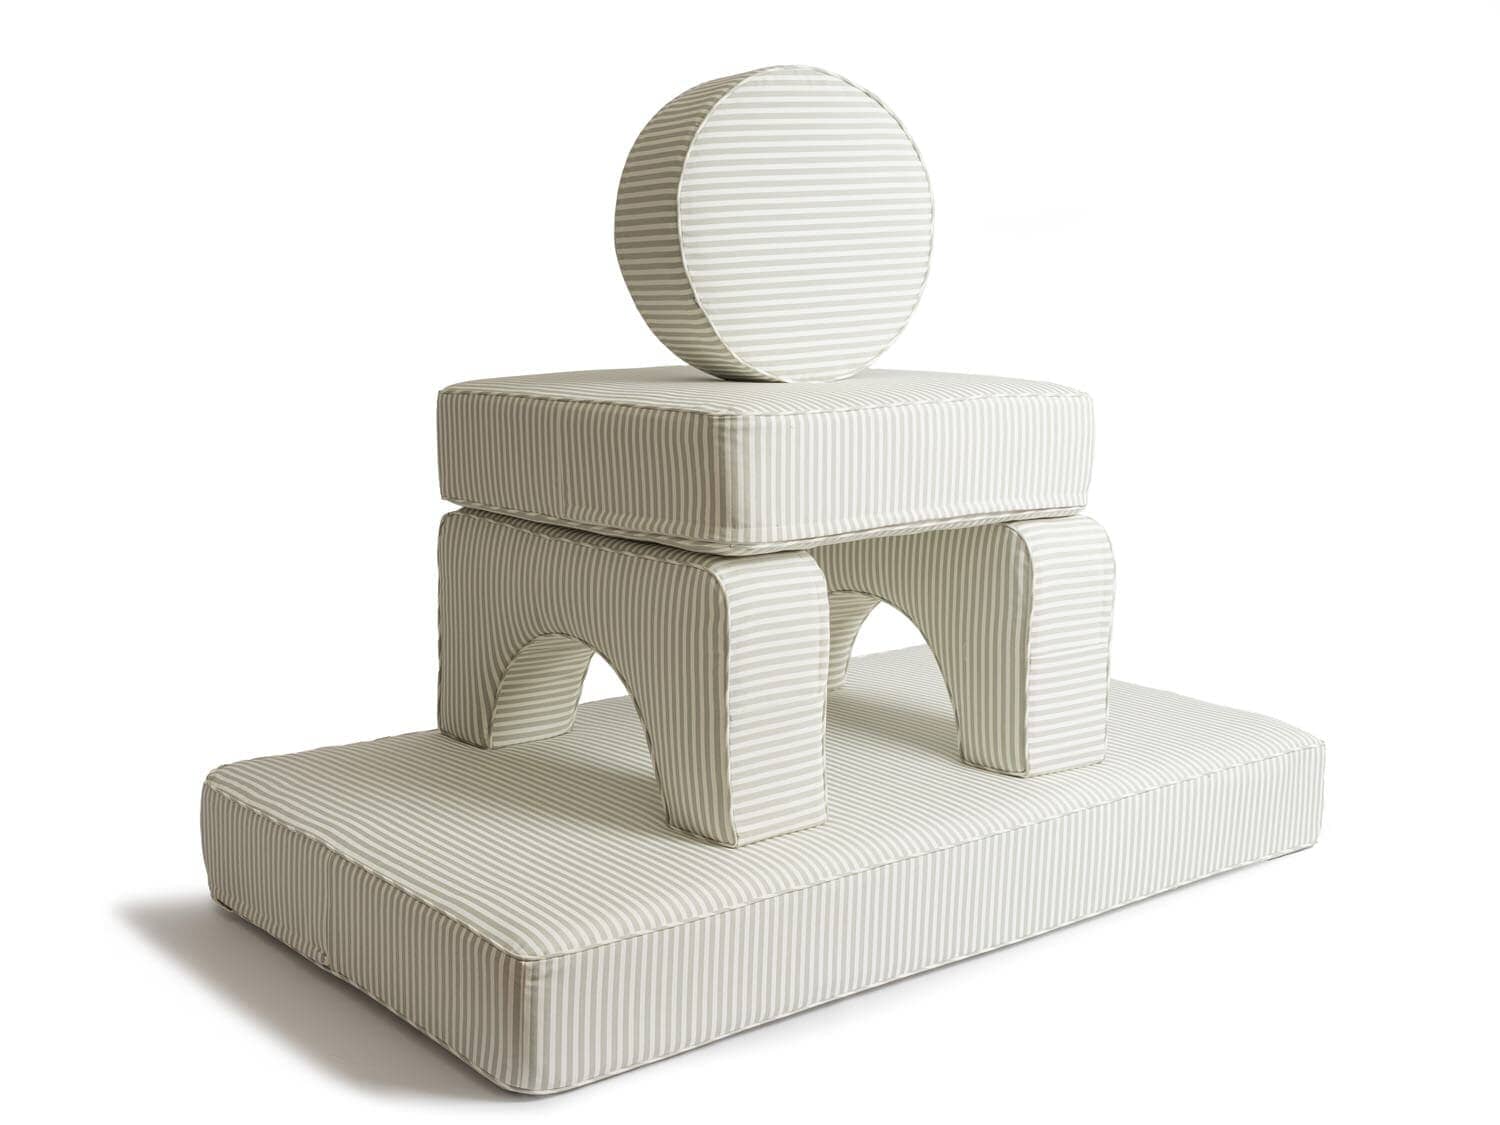 Studio image of sage modular pillow stack